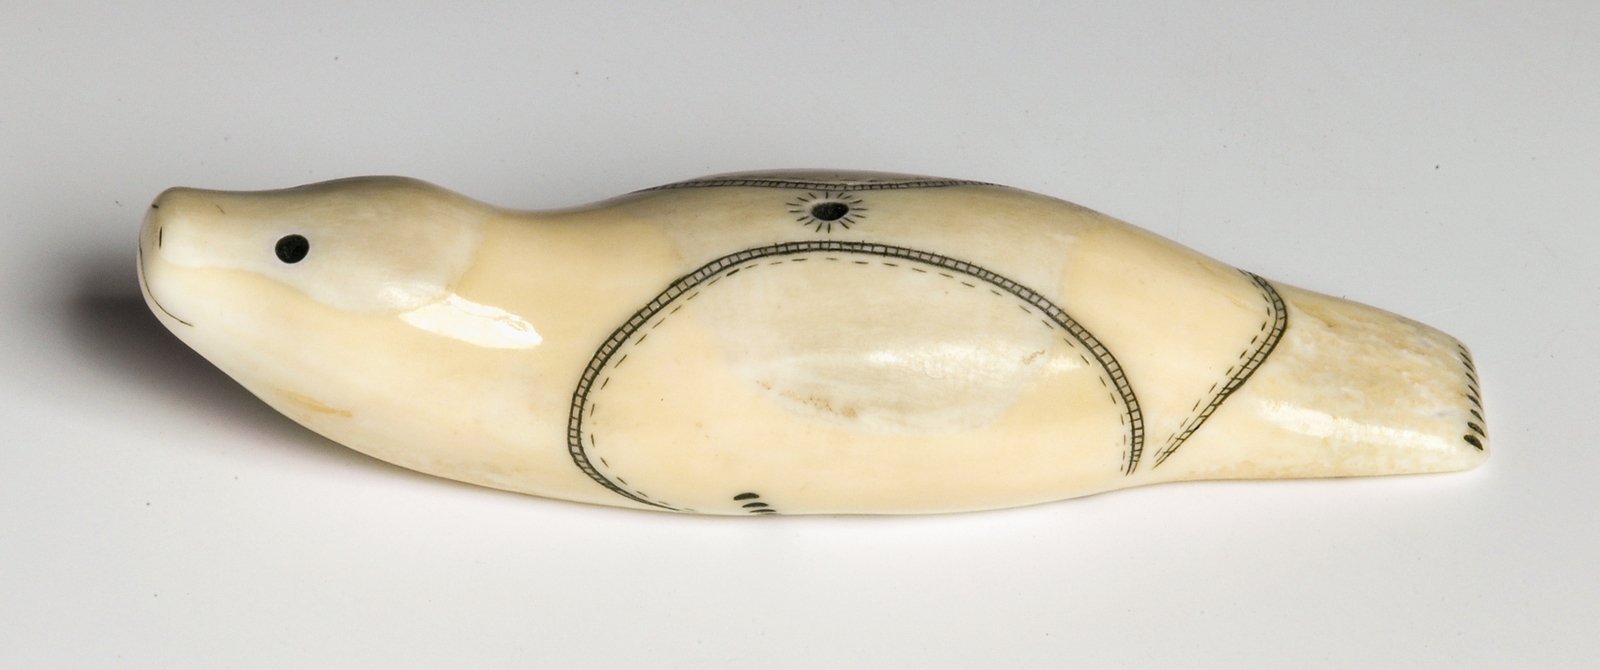 Oleg Kalyach. Seal. 1987Uelen, ChukotkaWalrus tusk, carving, engraving. Length 9 cmState Museum of Oriental Art